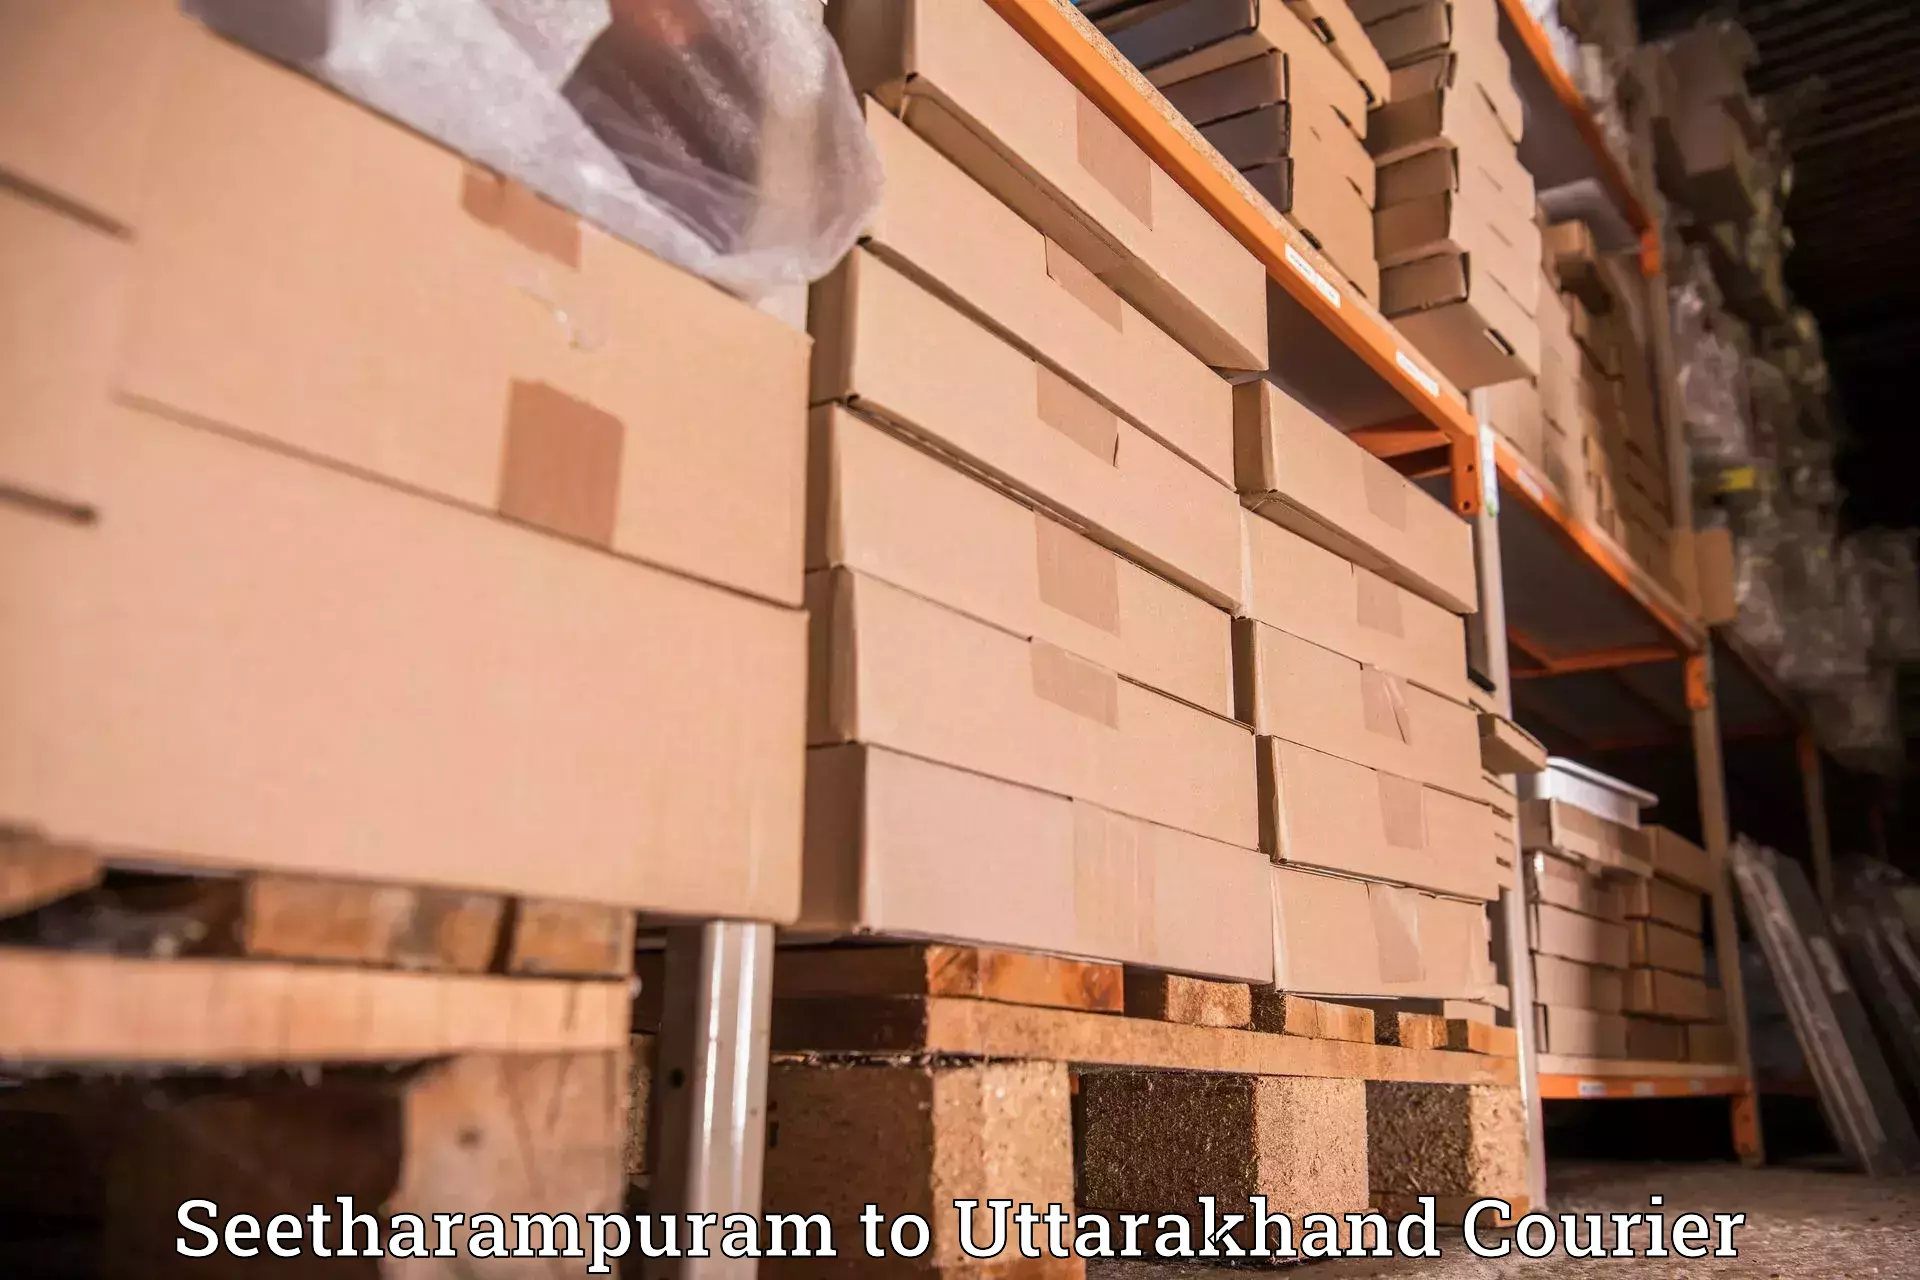 Global shipping networks Seetharampuram to Ranikhet